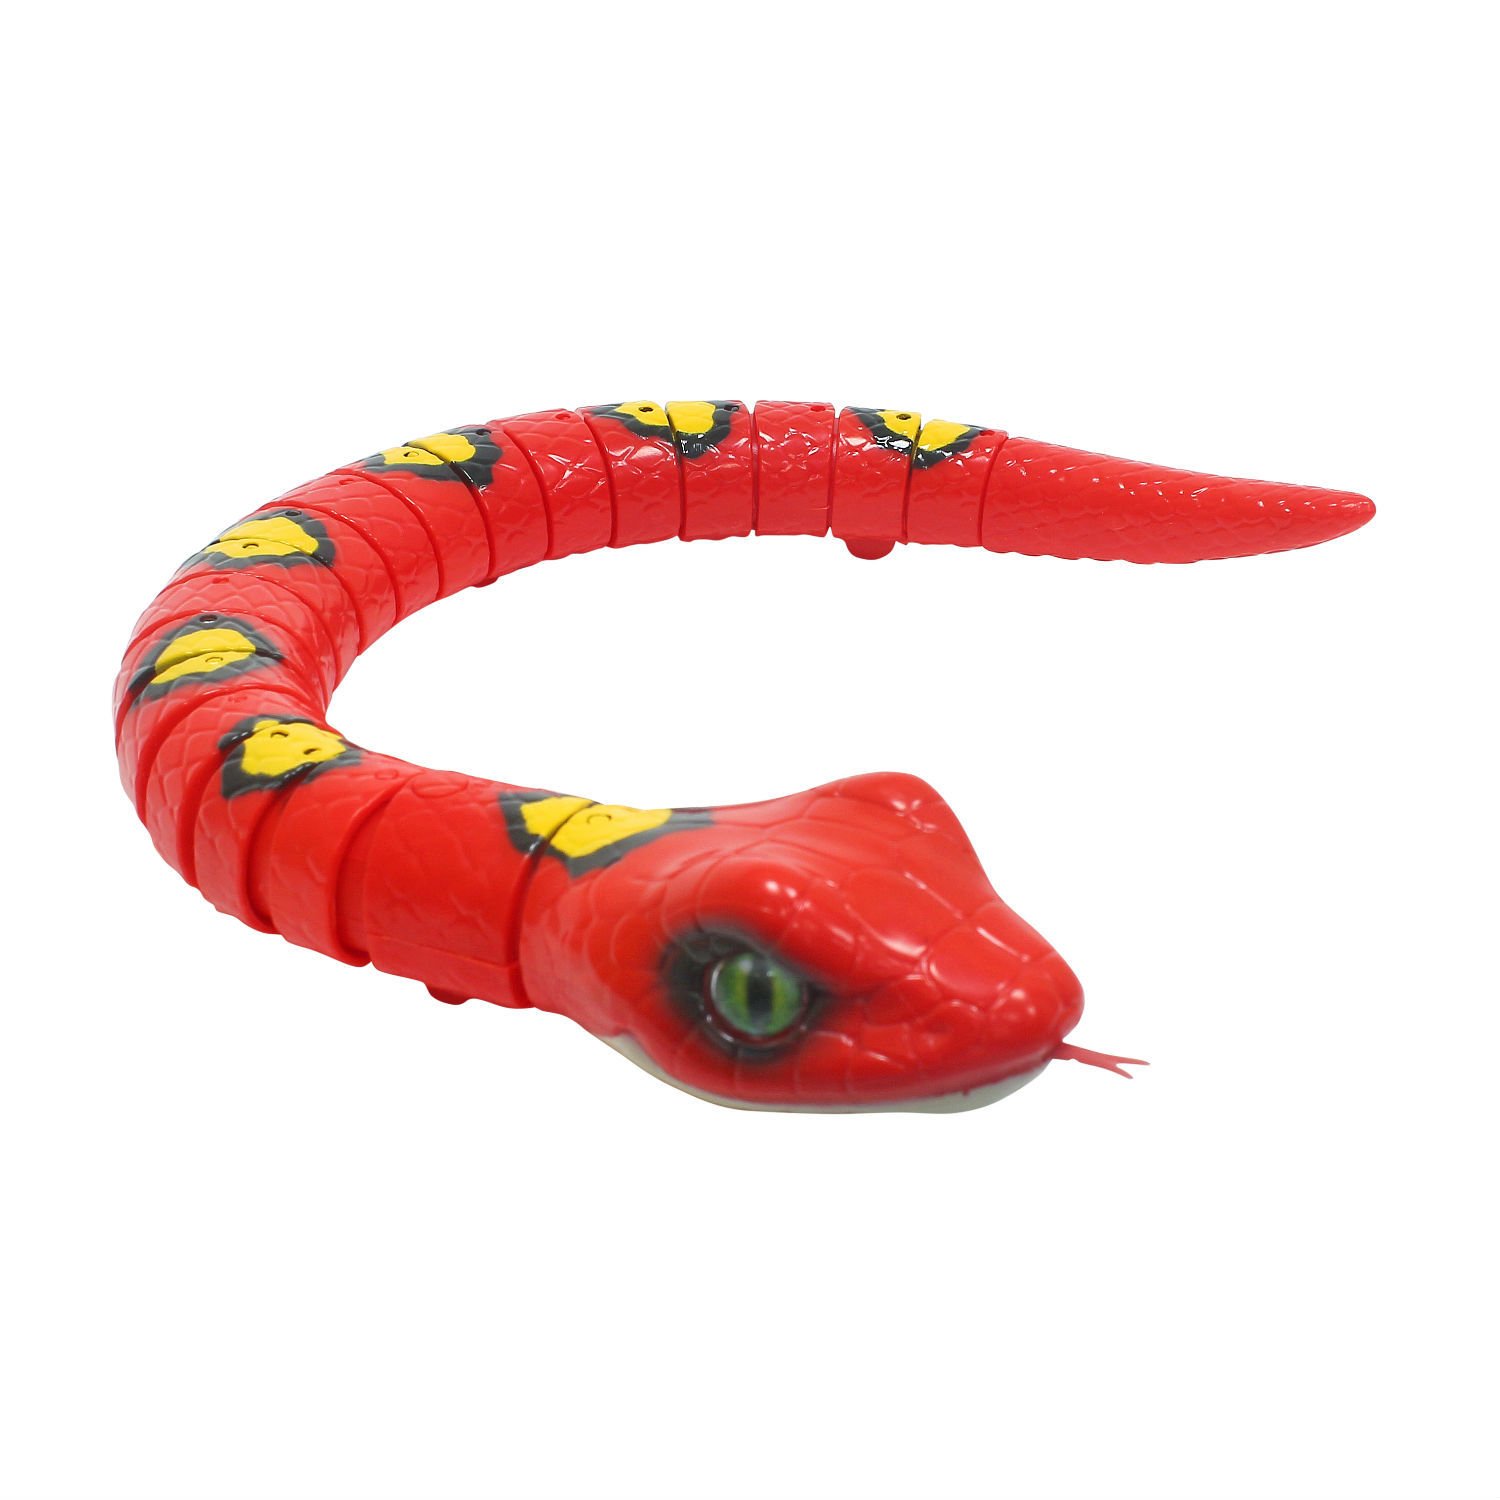 Змеи игрушки купить. Zuru интерактивная игрушка робо-змея ROBOALIVE цвет красный. Jpjy Zuru интерактивная игрушка ROBOALIVE робо-змея зеленая t10995. Робот Элайв змея. Робот змея (1csc20003864).